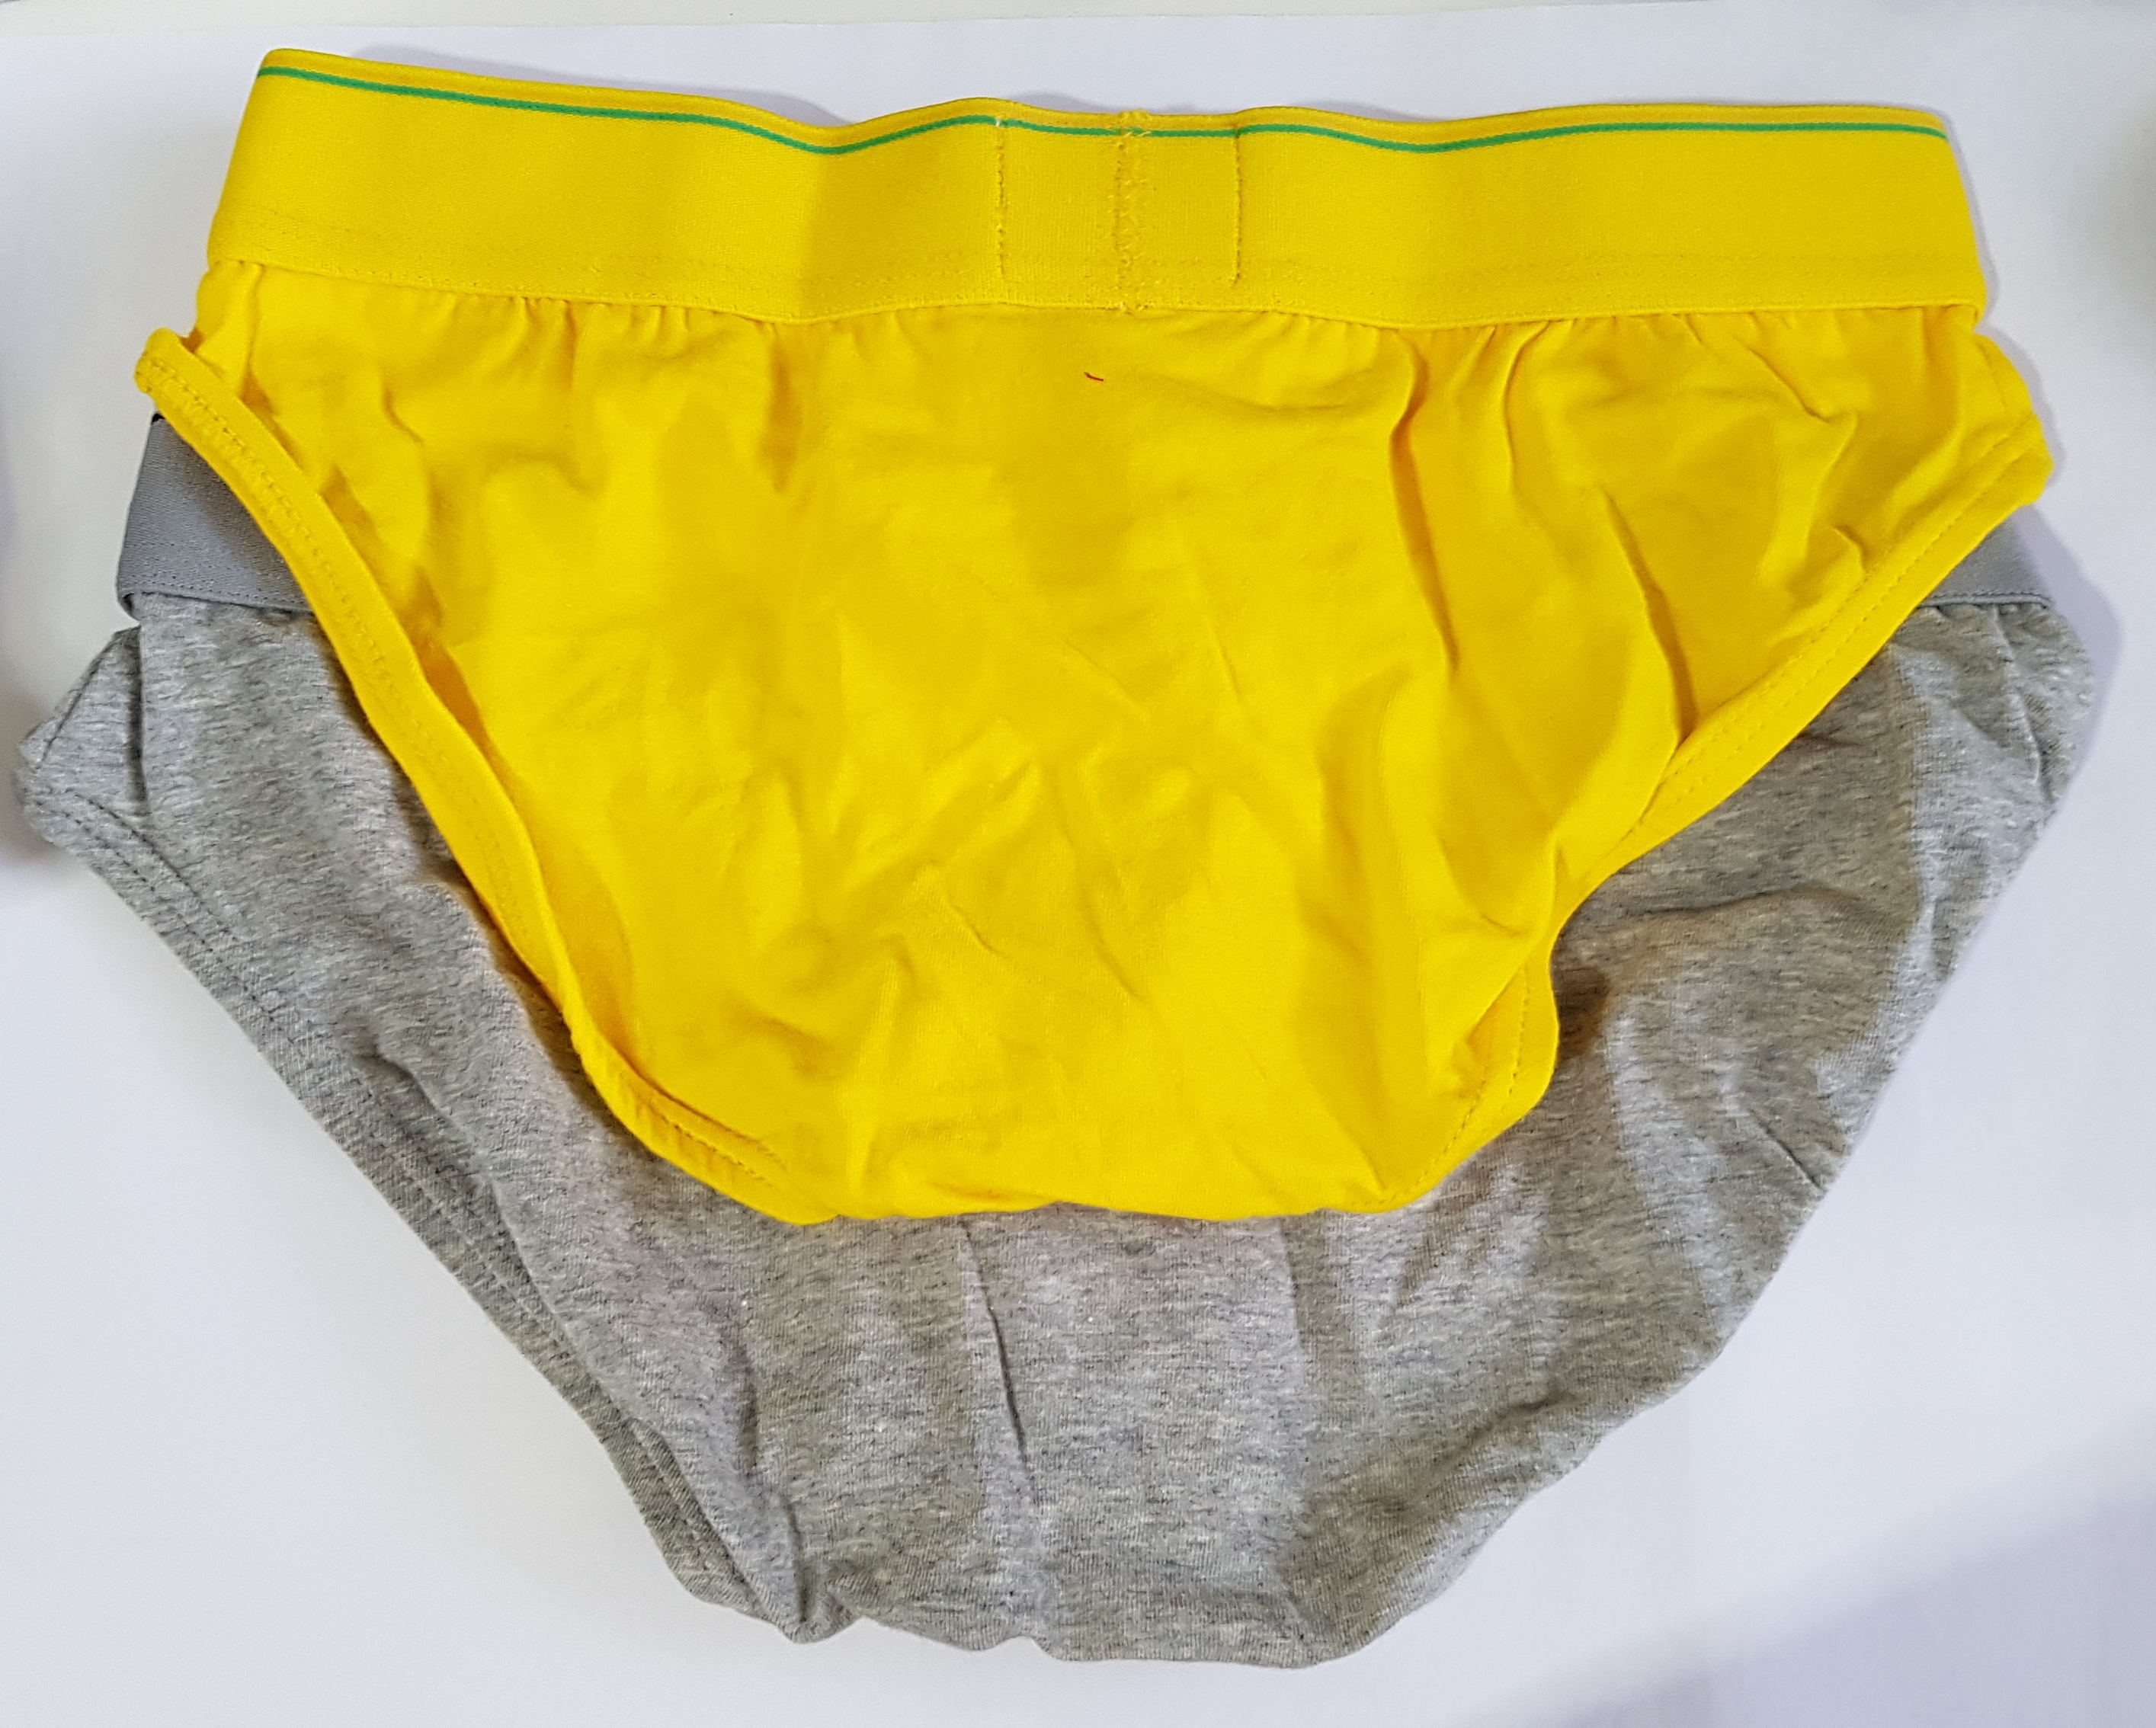 (NEW) BUM EQUIPMENT Super Low-Rider Low-Raise Mini Men's Underwear S ...